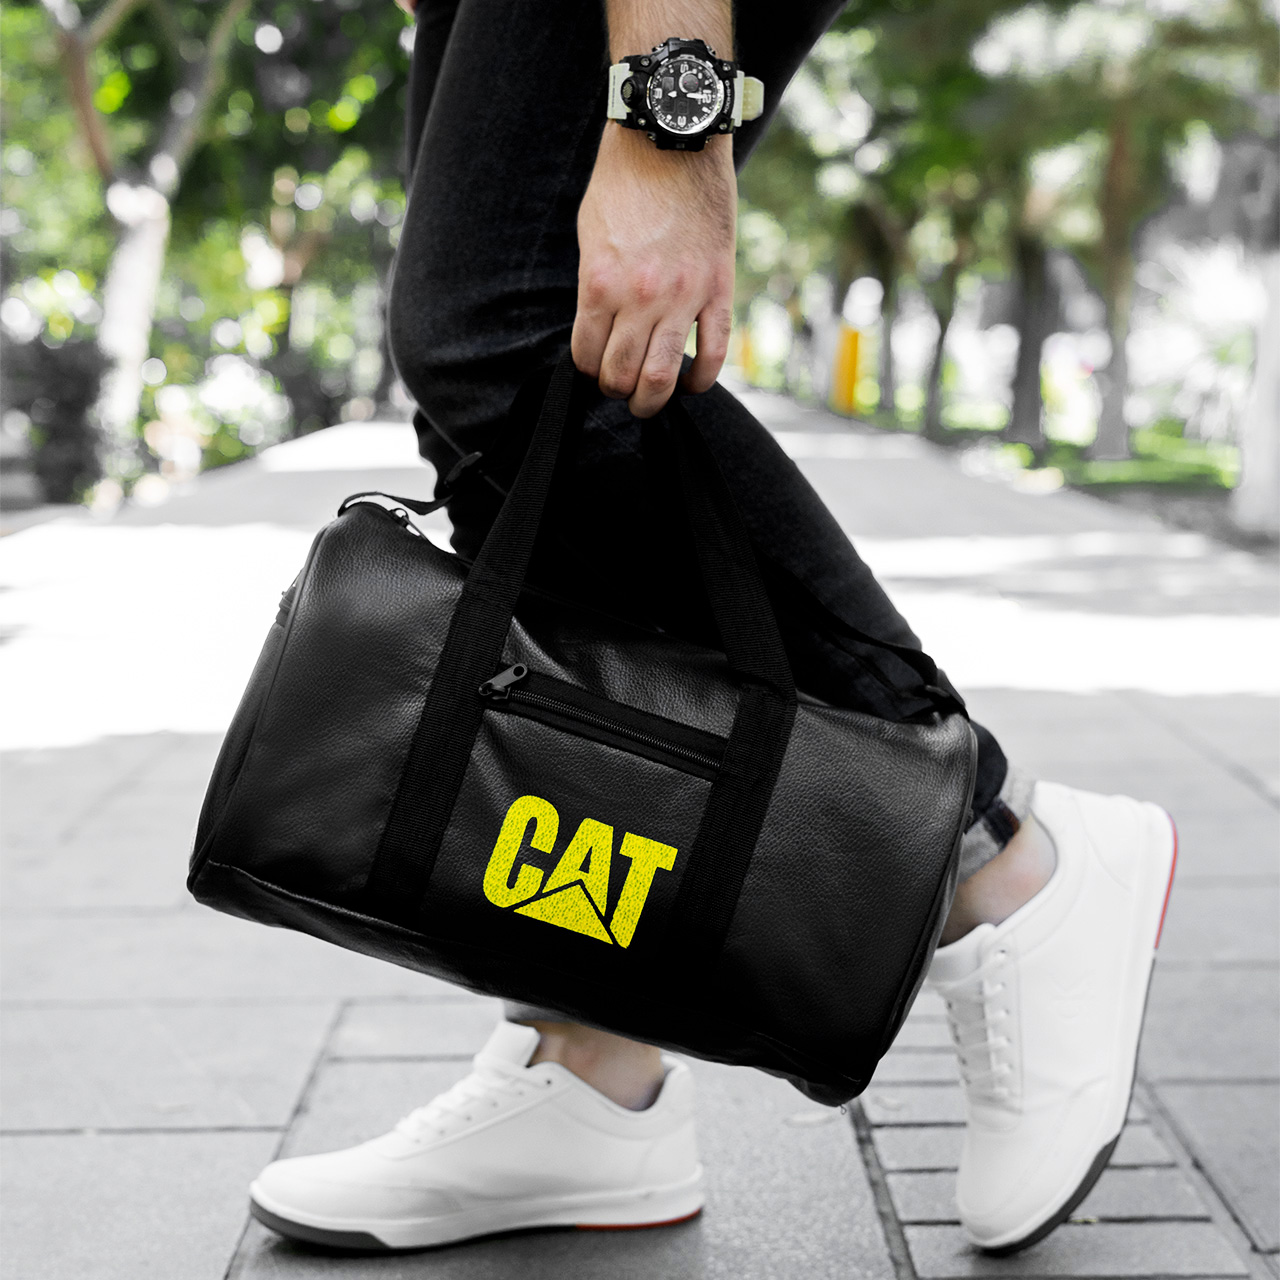 خرید آنلاین ساک ورزشی Cat مشکی مدل Bahram,Bahram black cat sports bag,ساک ورزشی کاترپیلار مدل بهرام رنگ مشکی,تخفیفانه ساک ورزشی Cat مشکی مدل Bahram,خرید پستی ساک ورزشی Cat مشکی مدل Bahram,